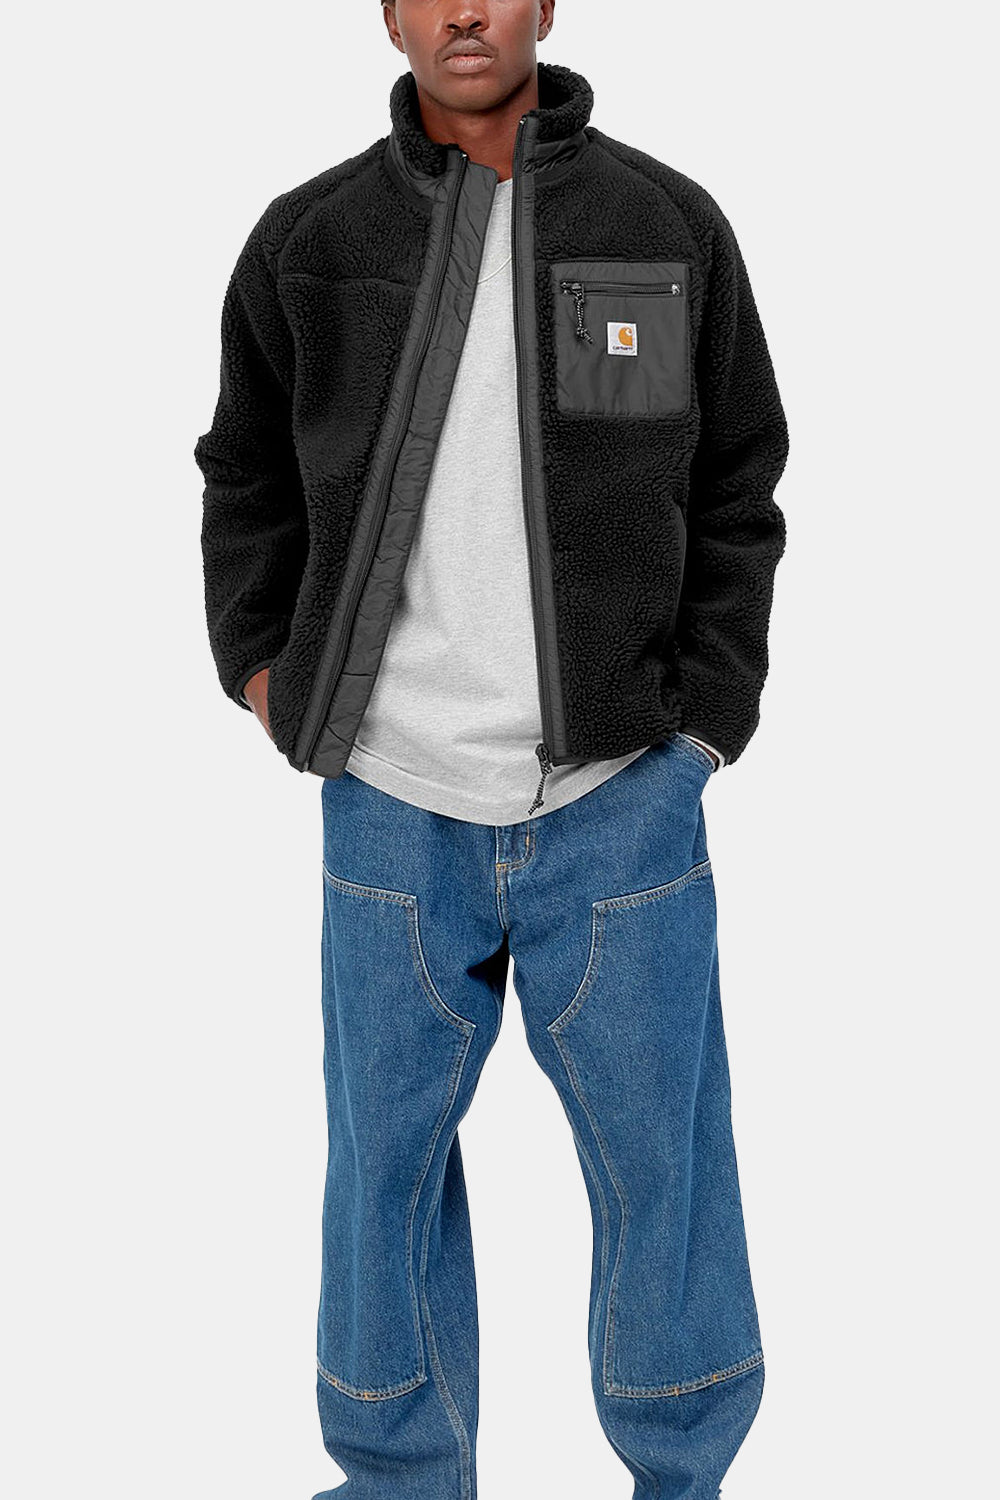 Carhartt WIP Prentis Liner Jacket (Black)